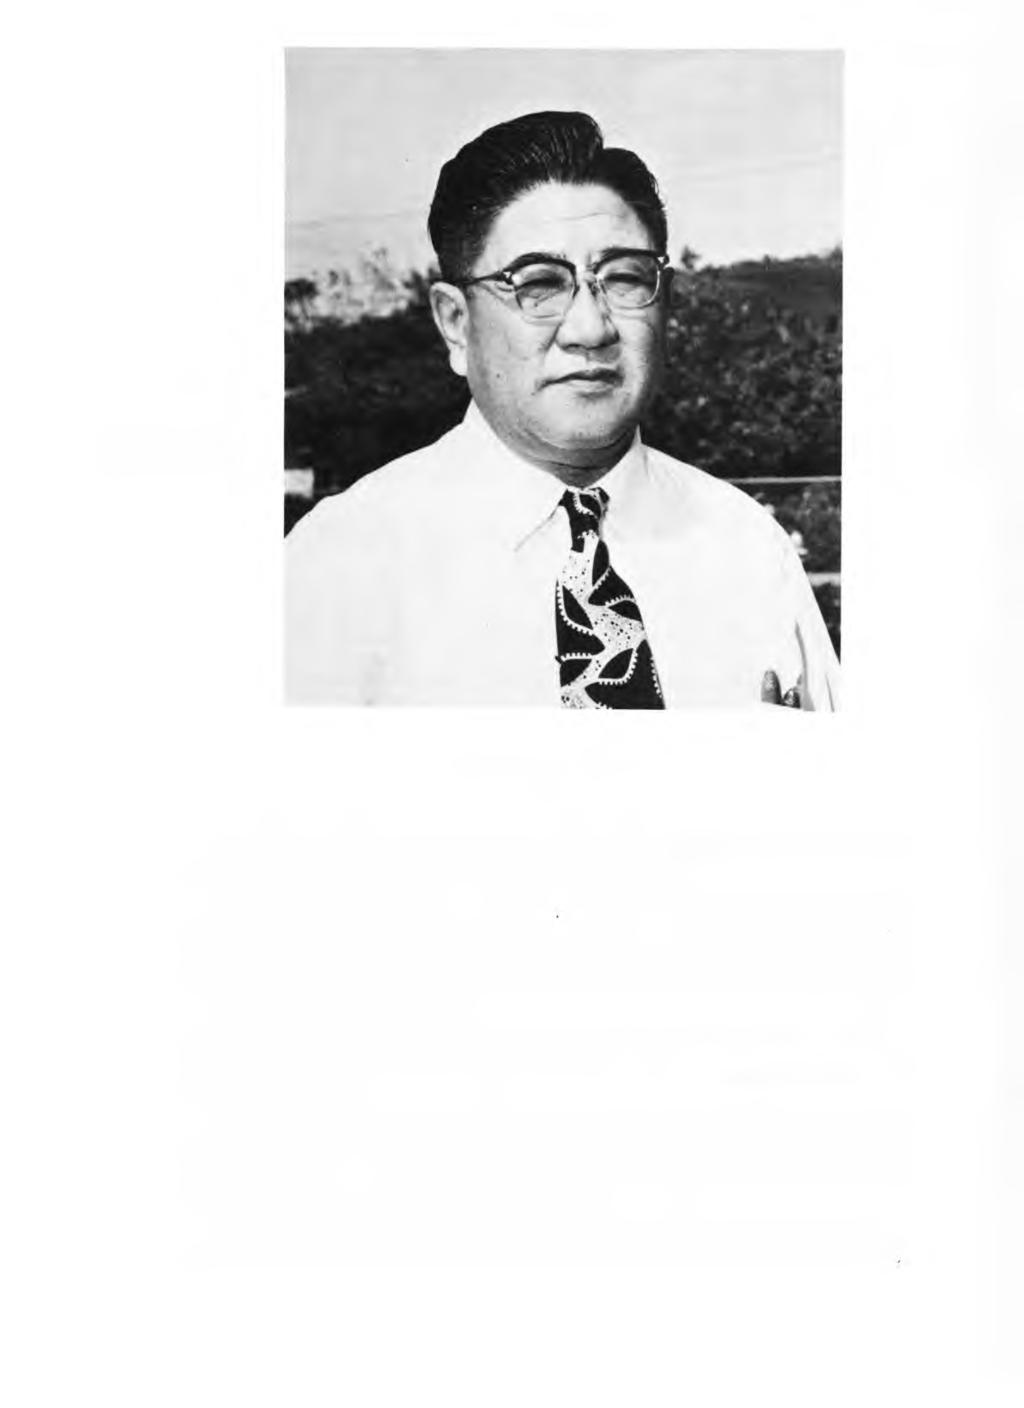 JAM ES M. TANAKA Deceased James Masato Tanaka November 24, 1903 - M arch 7, 1975. Mr. Tanaka, w ho was the founder of the J. M. Tanaka Construction Co.